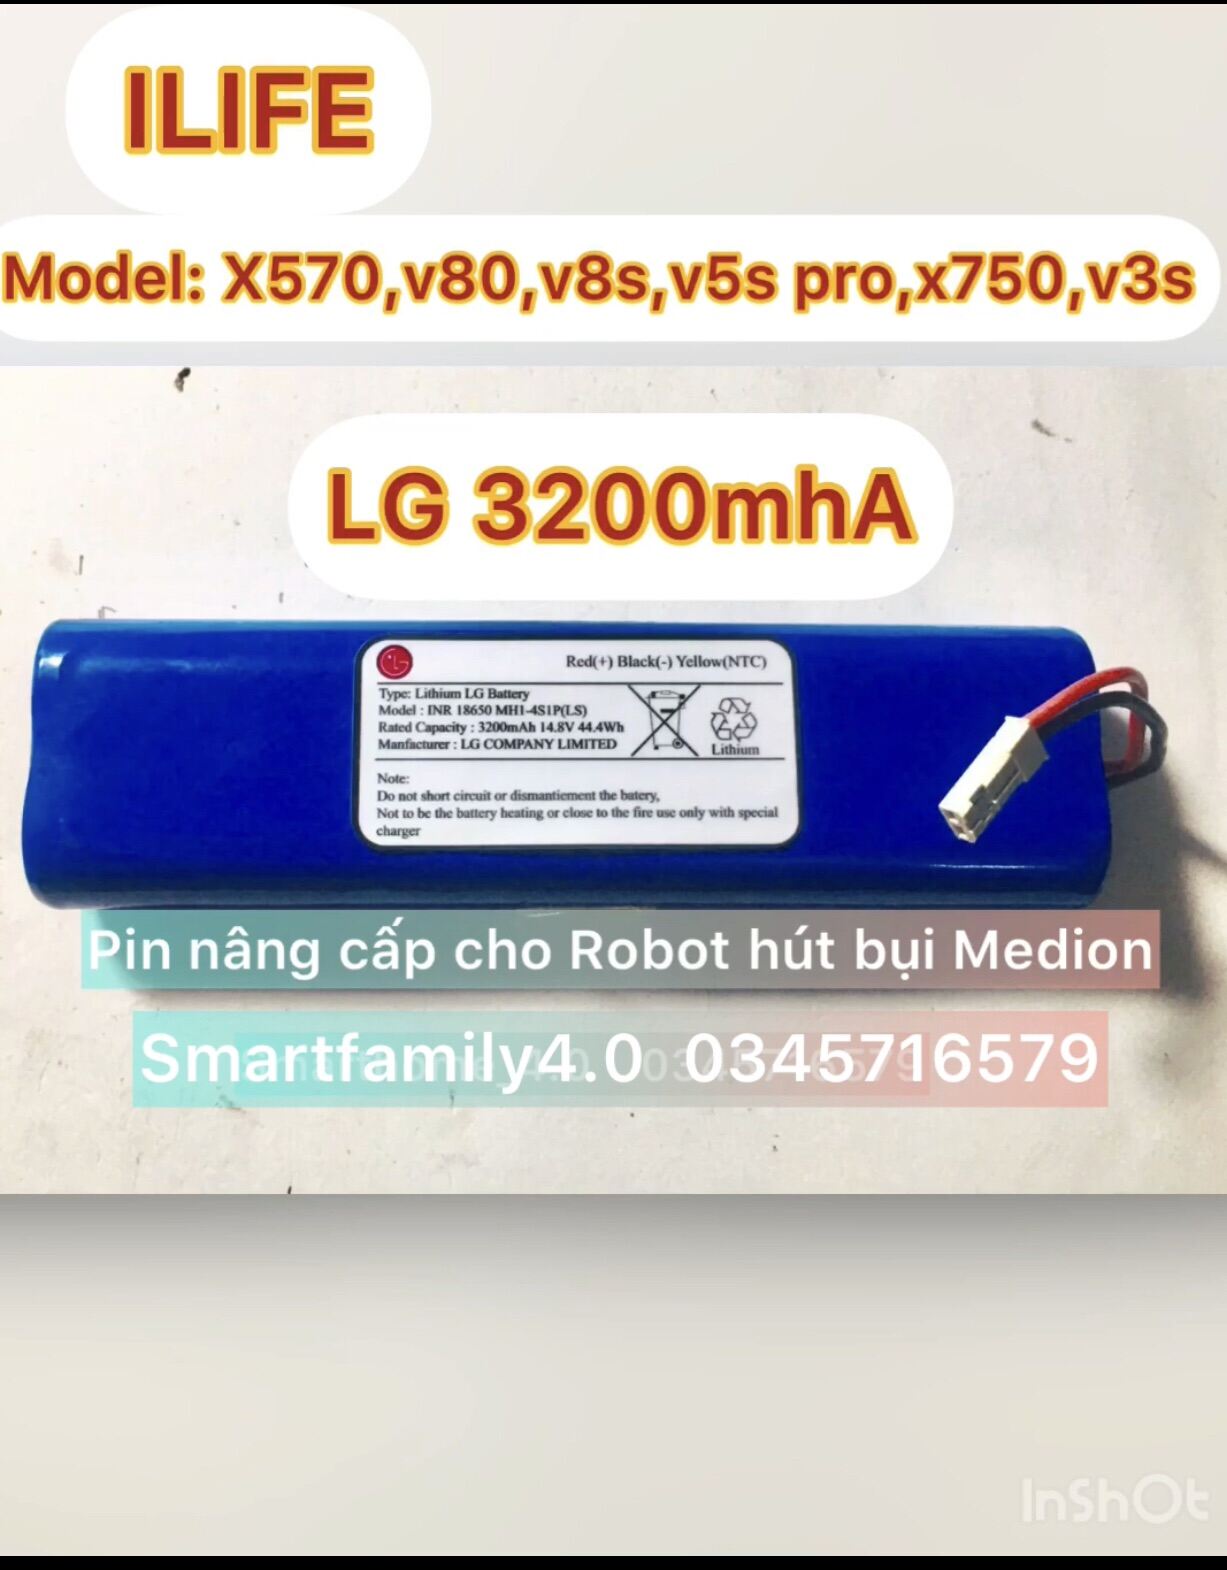 Bảng giá PIN LG 3200mhA (BH 6 tháng-New 100%) NÂNG CẤP CHO ROBOT HÚT BỤI ILIFE X570,V80,V8S,V5S PRO,X750,V3S